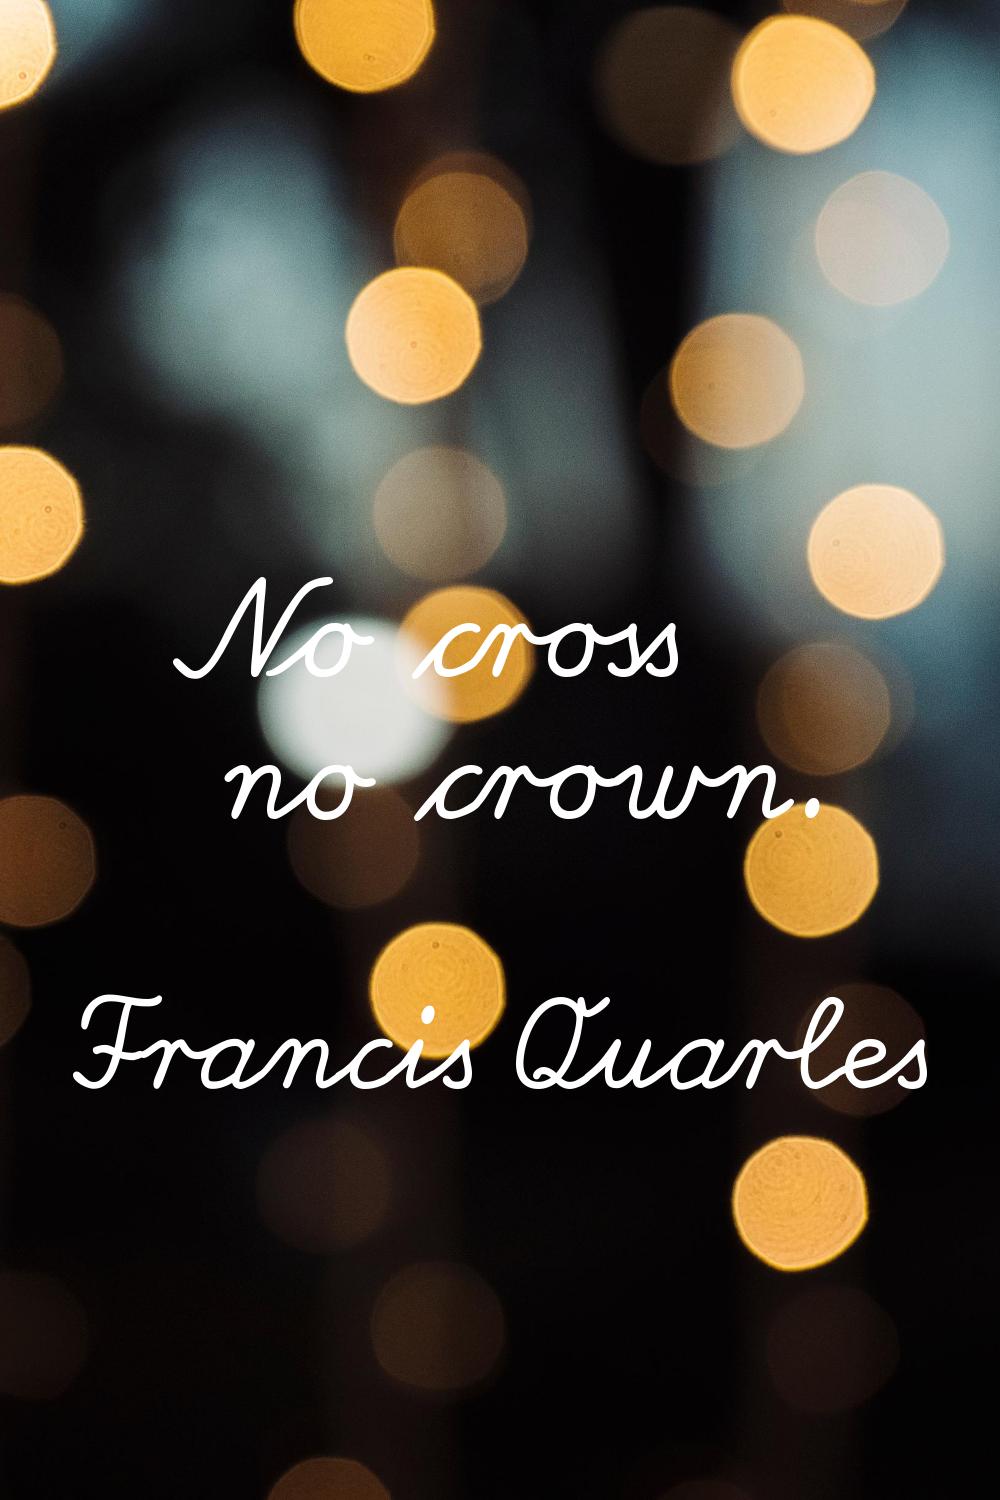 No cross no crown.